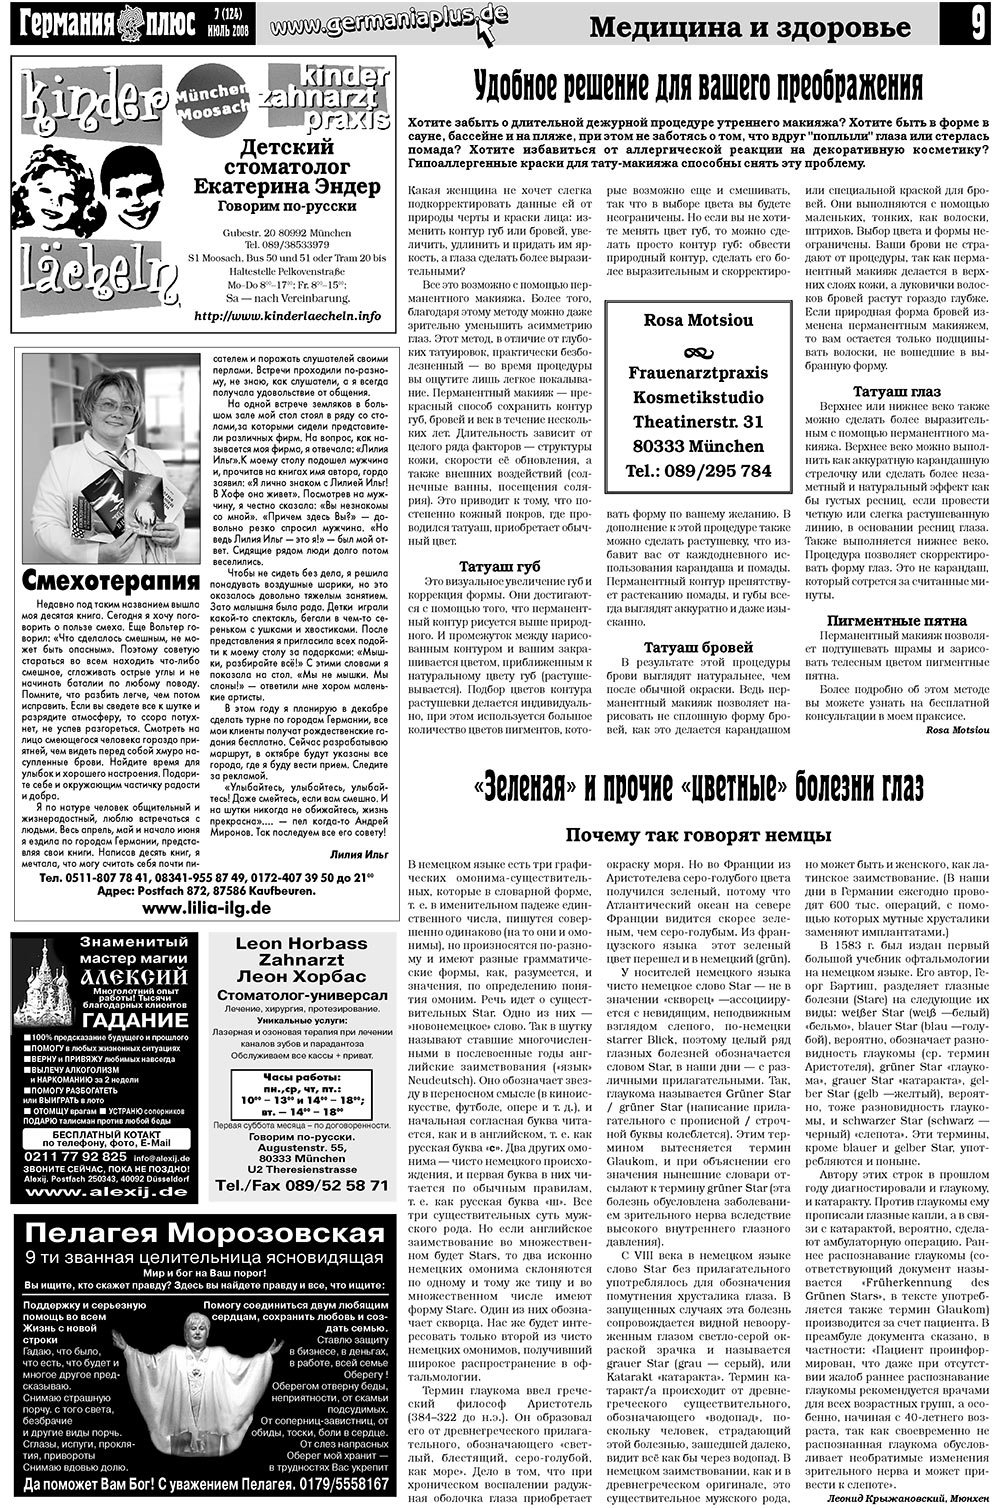 Германия плюс, газета. 2008 №7 стр.13